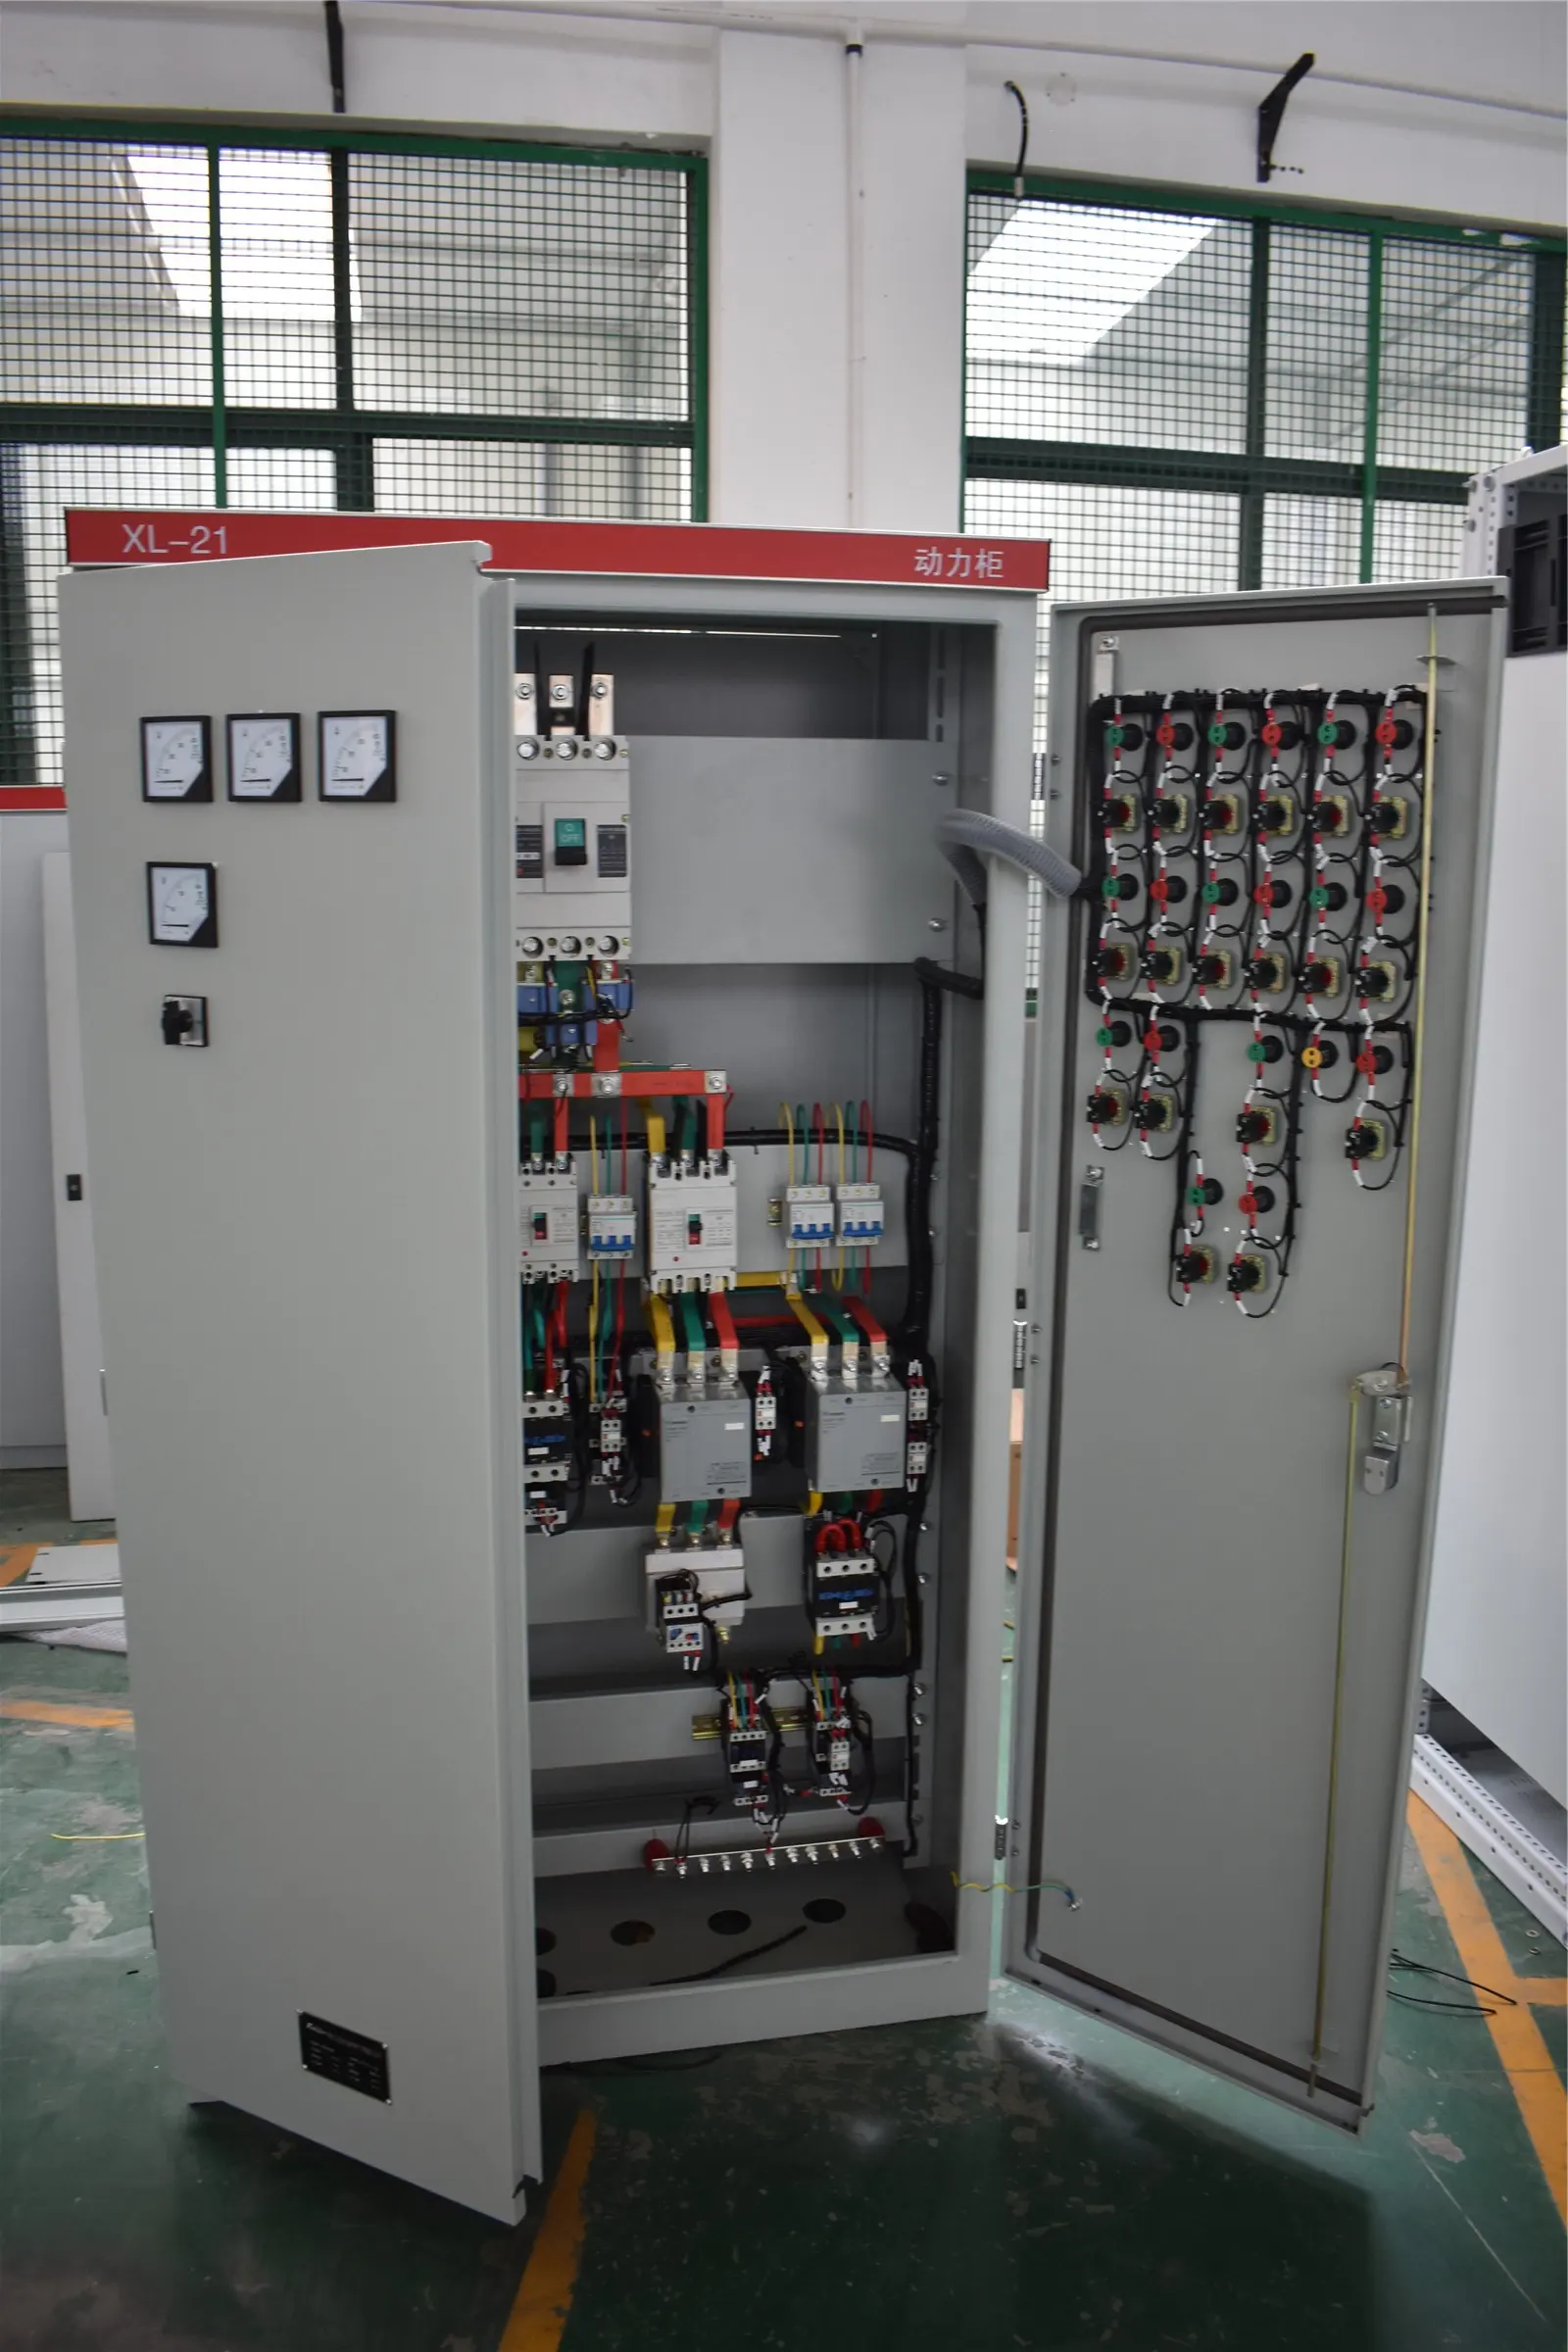 Ana LT düşük gerginlik XL-21 serisi elektrik güç dağıtım kontrol şalt paneli